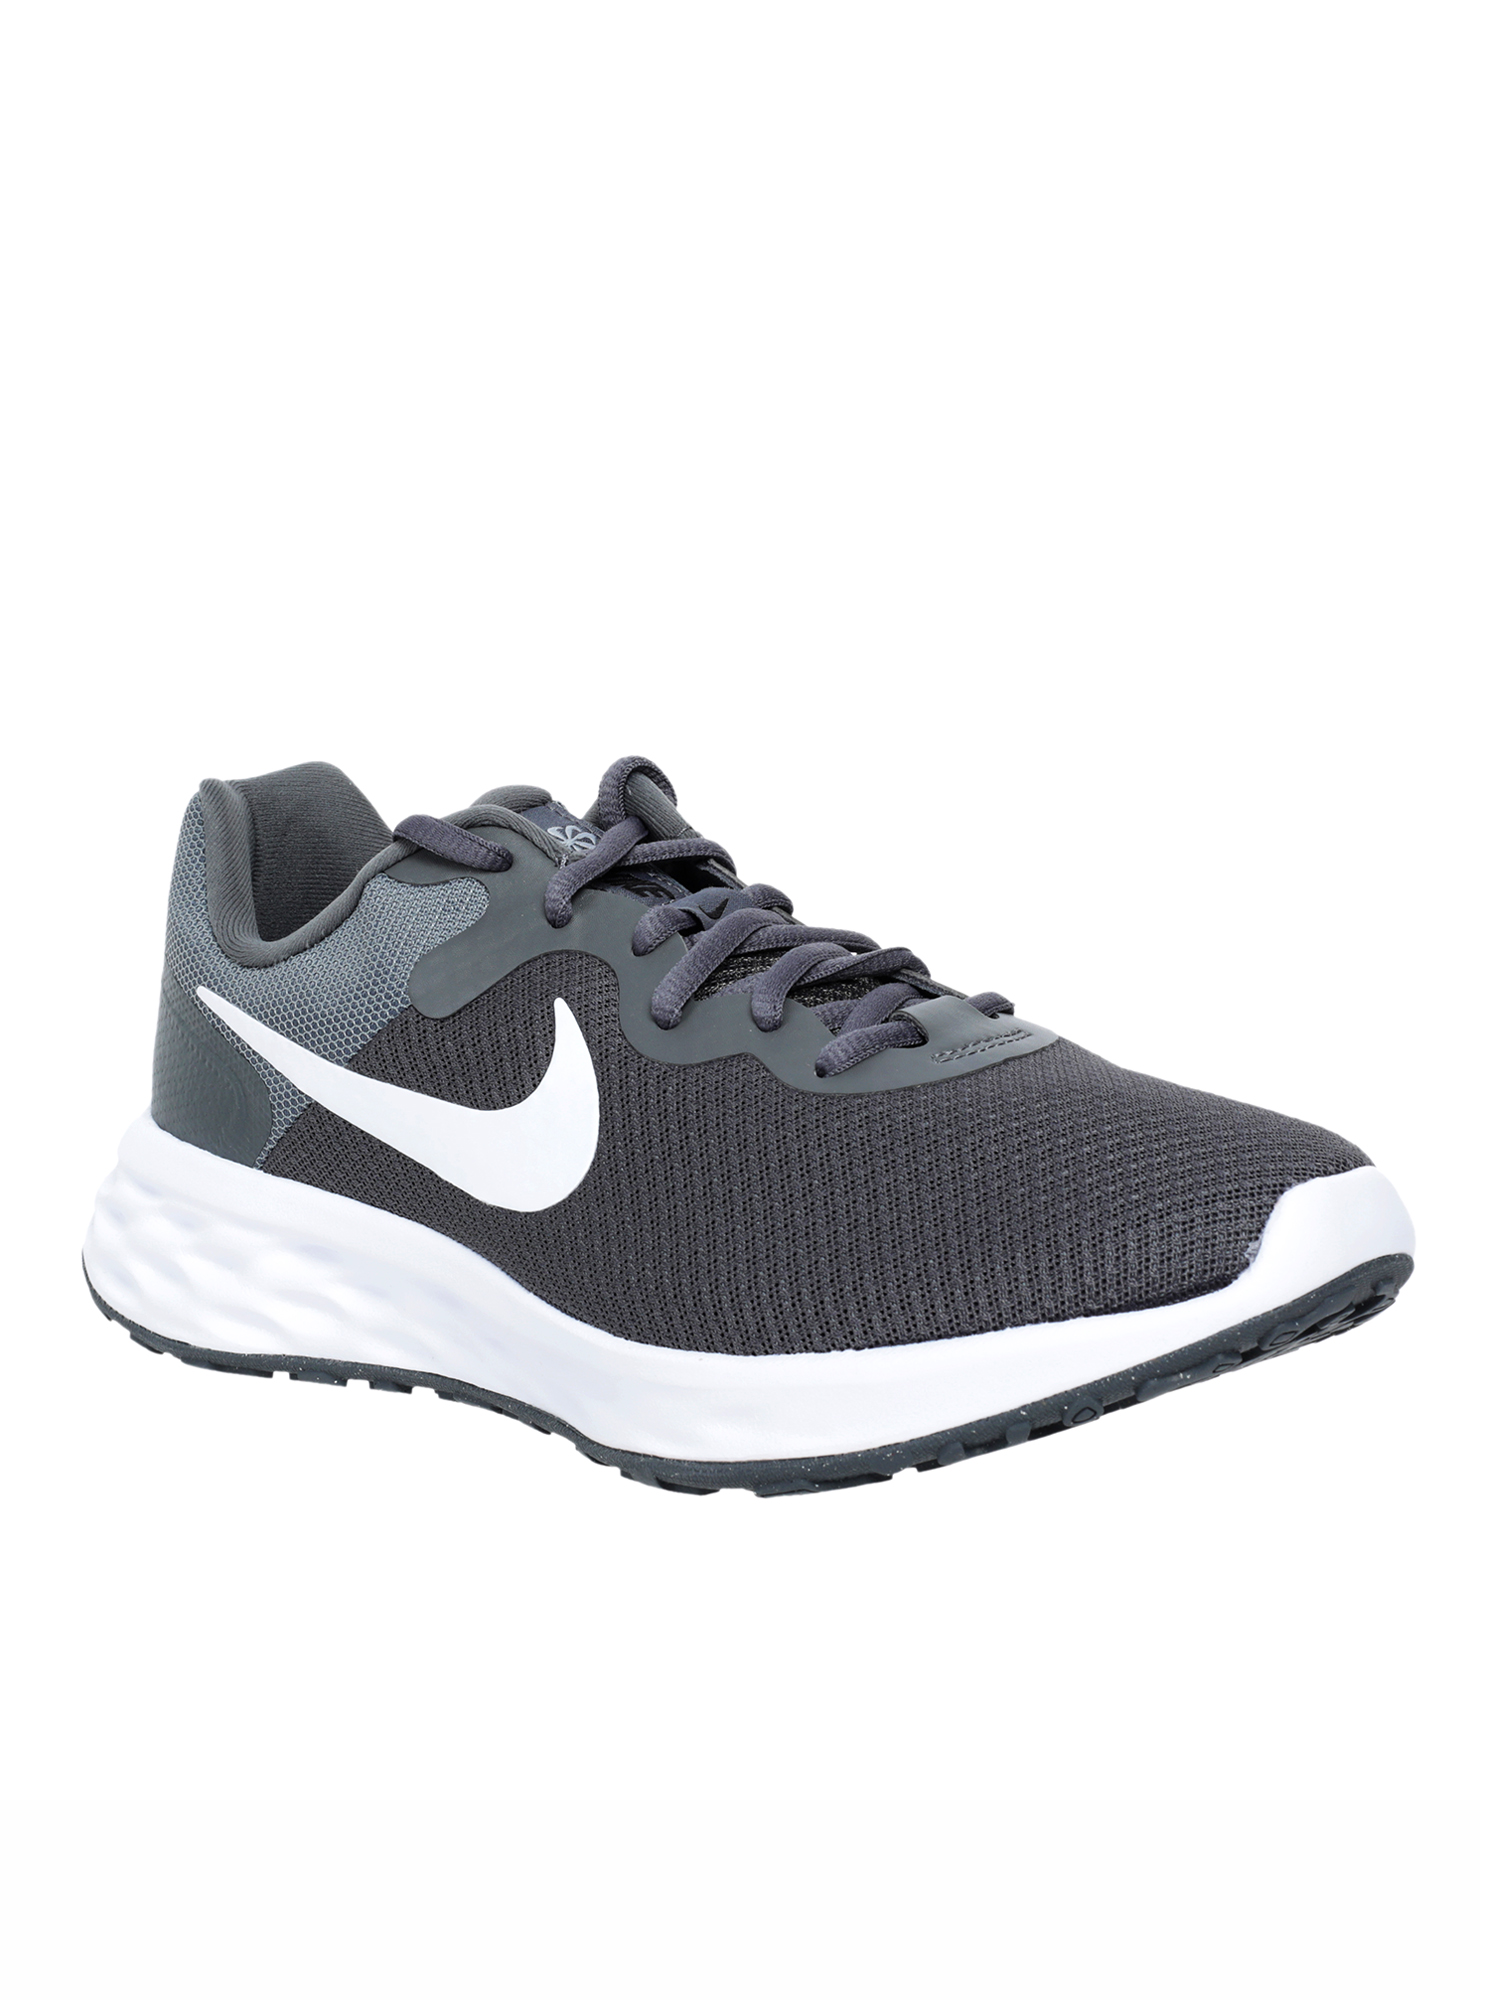 Кроссовки мужские Nike Revolution 6 Nn серые 9.5 US